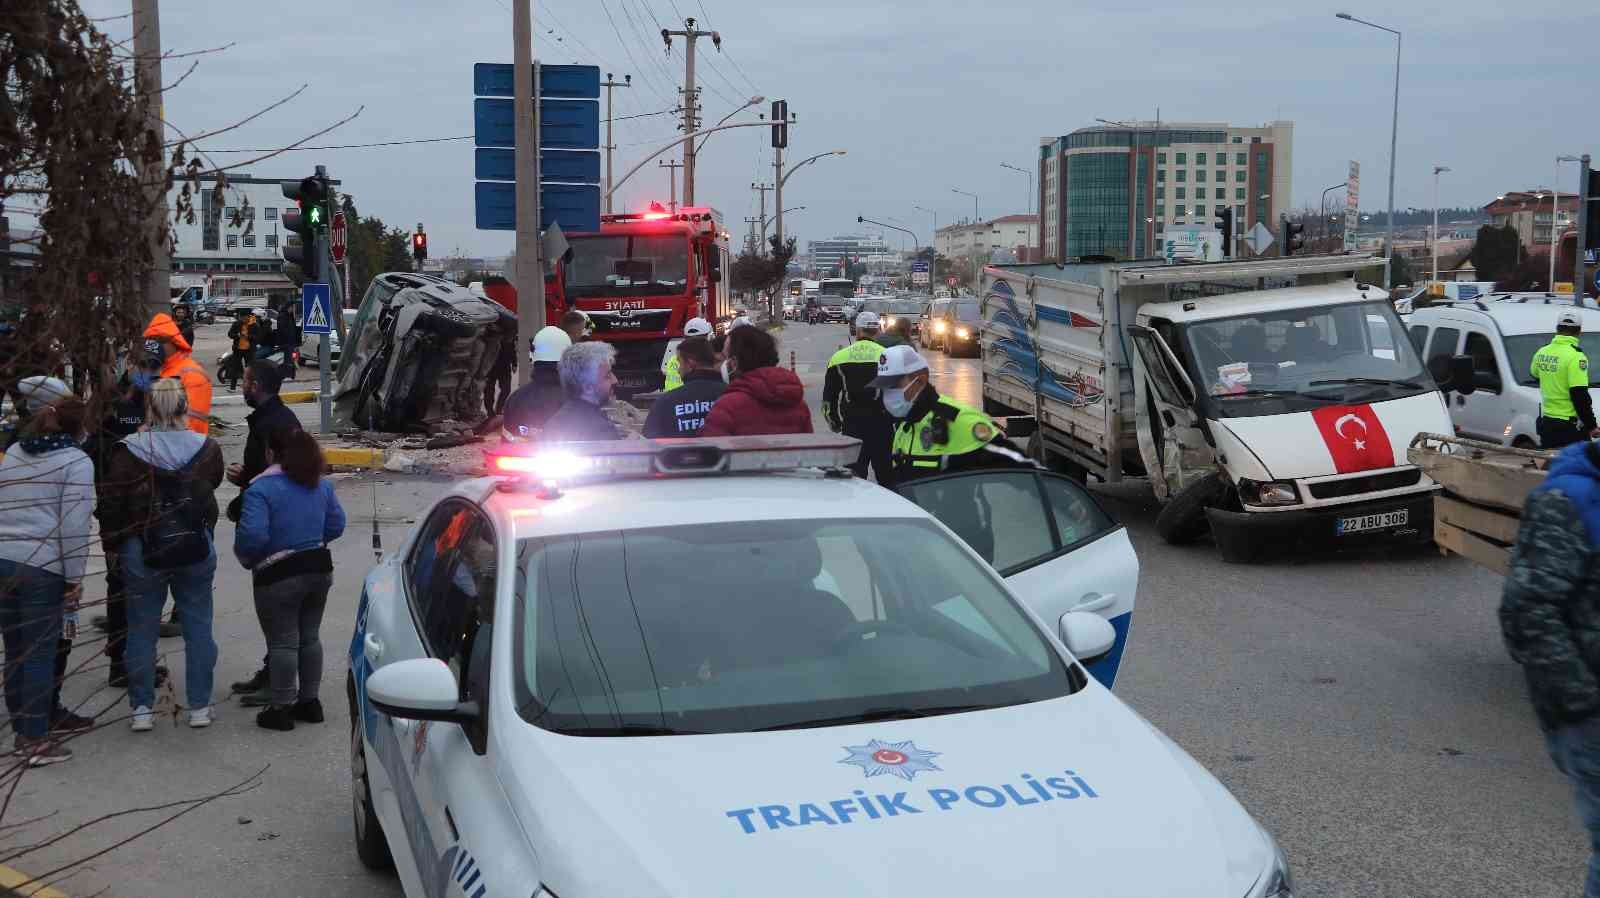 Edirne’de zincirleme kaza: 2 yaralı #edirne